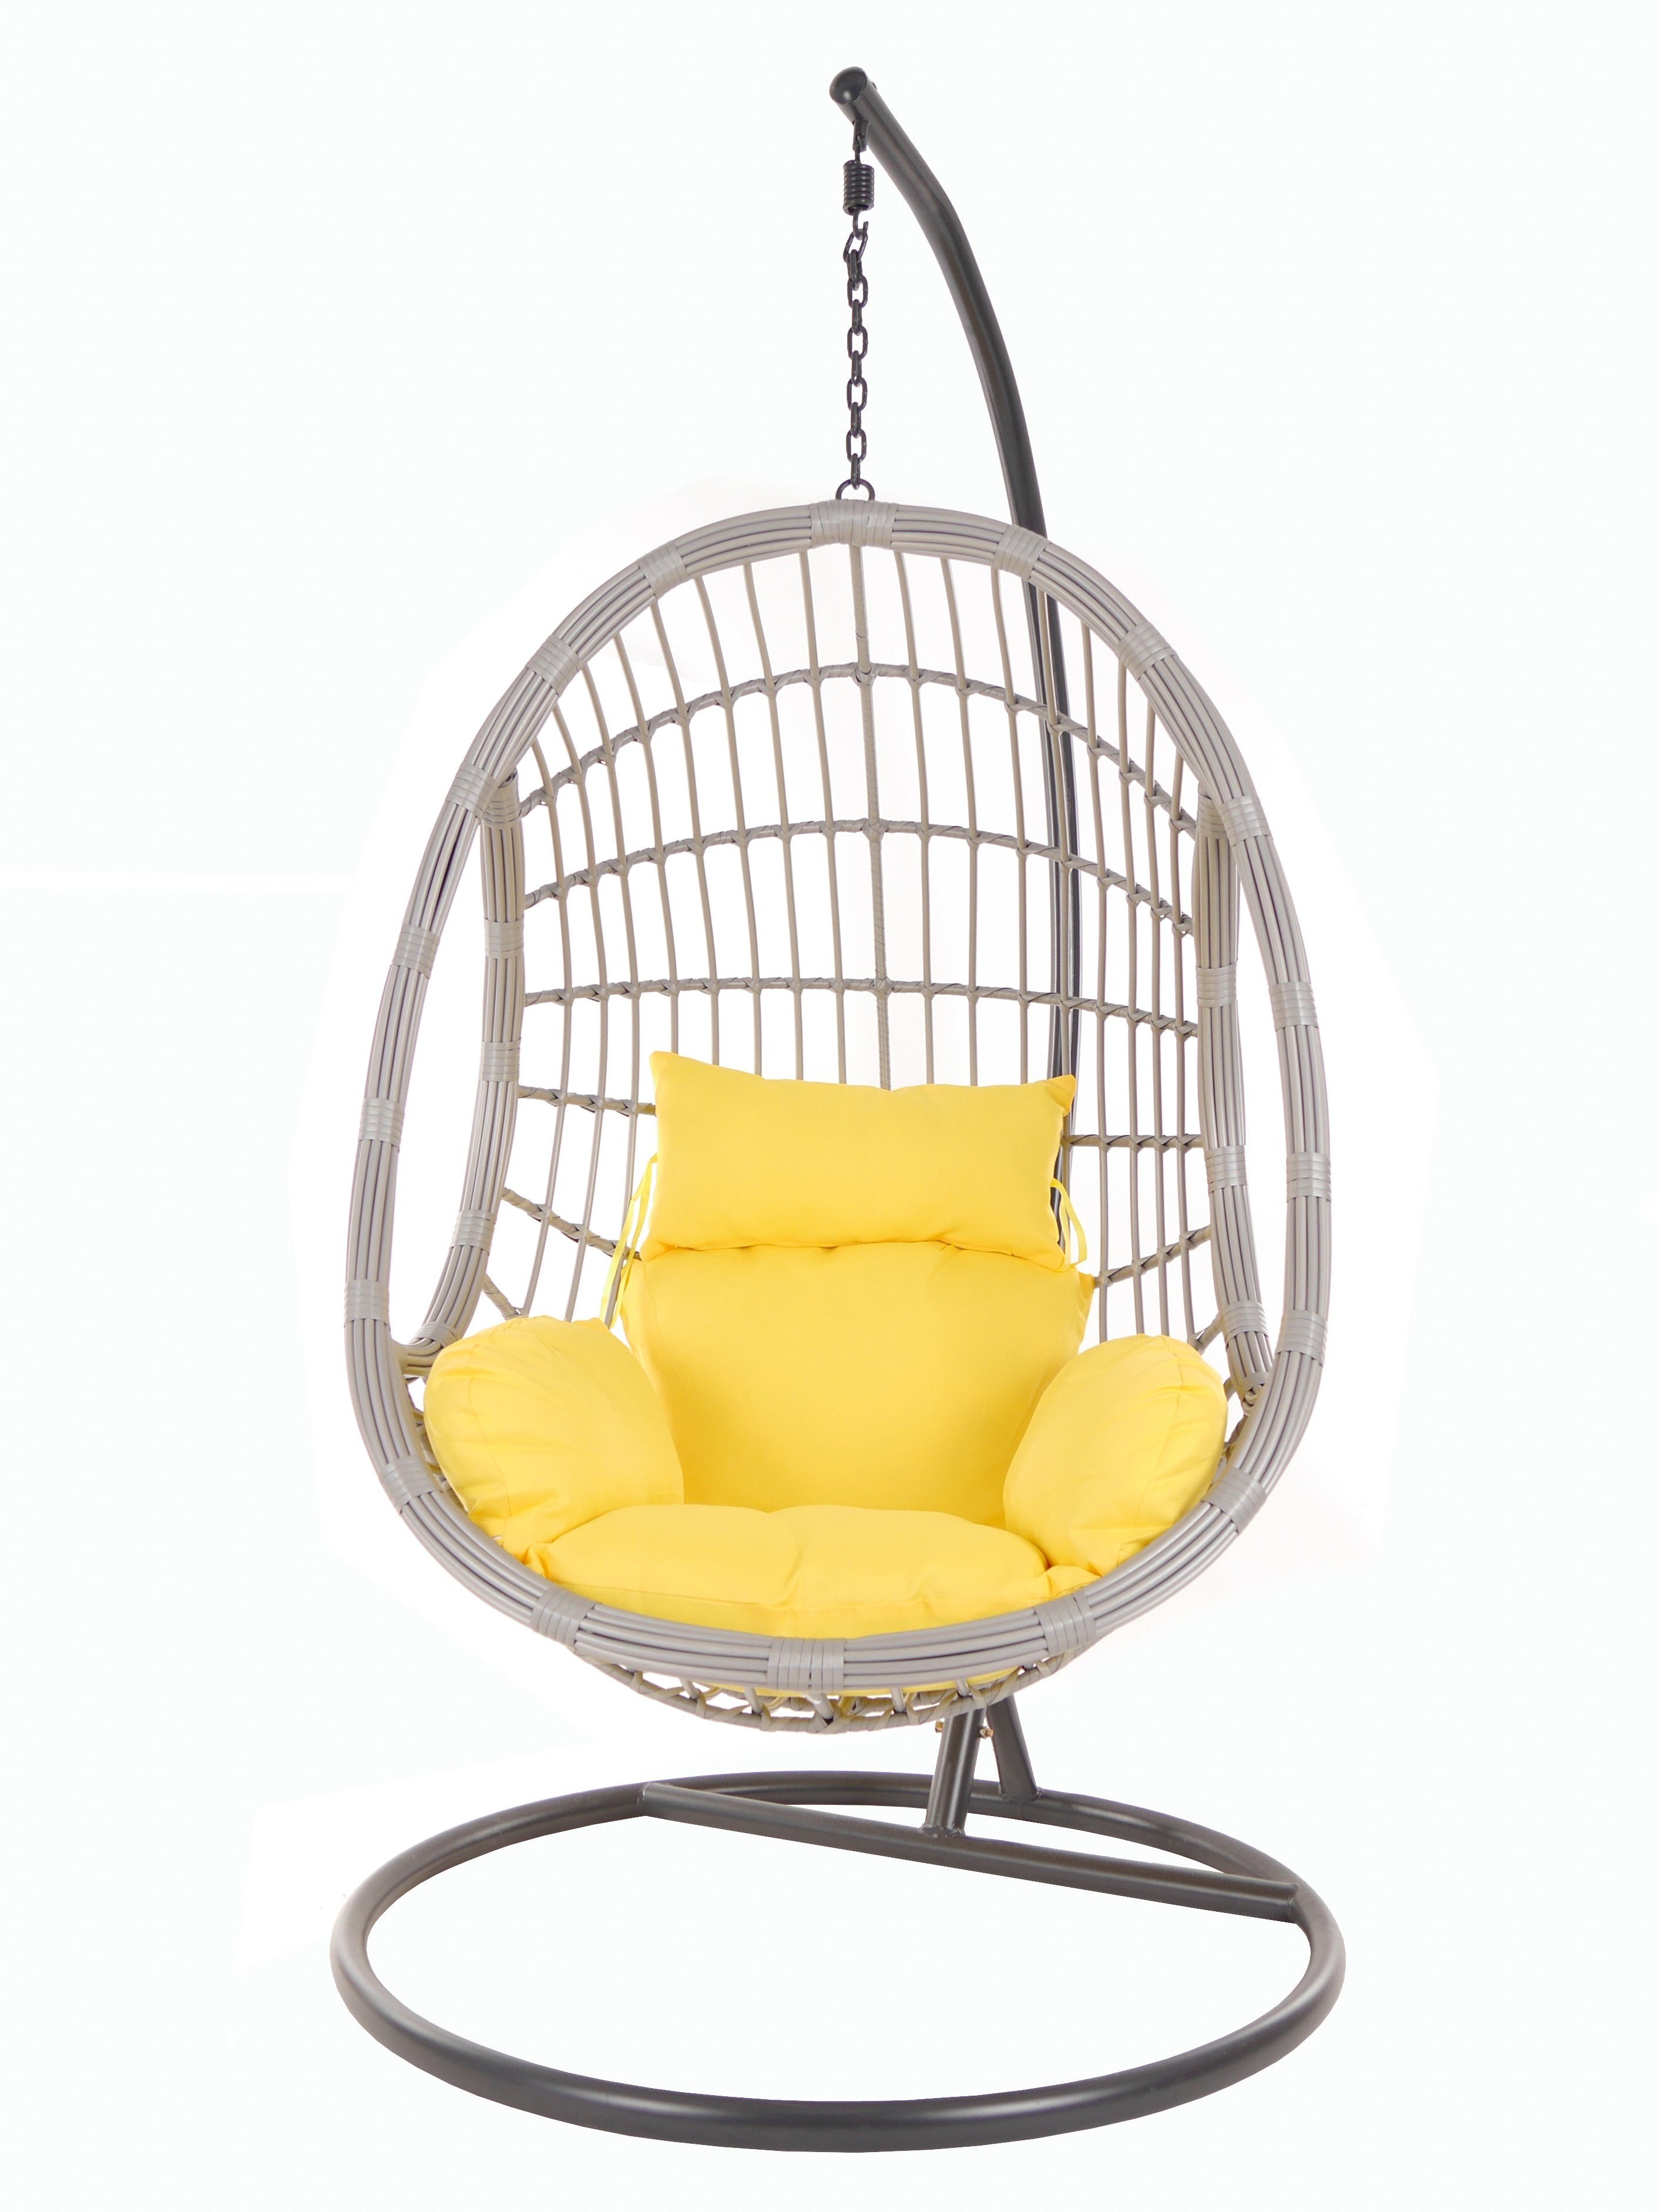 PALMANOVA Hängesessel Swing gelb KIDEO Chair, lightgrey, Kissen, Gestell Schwebesessel (2200 Loungemöbel mit und pineapple)